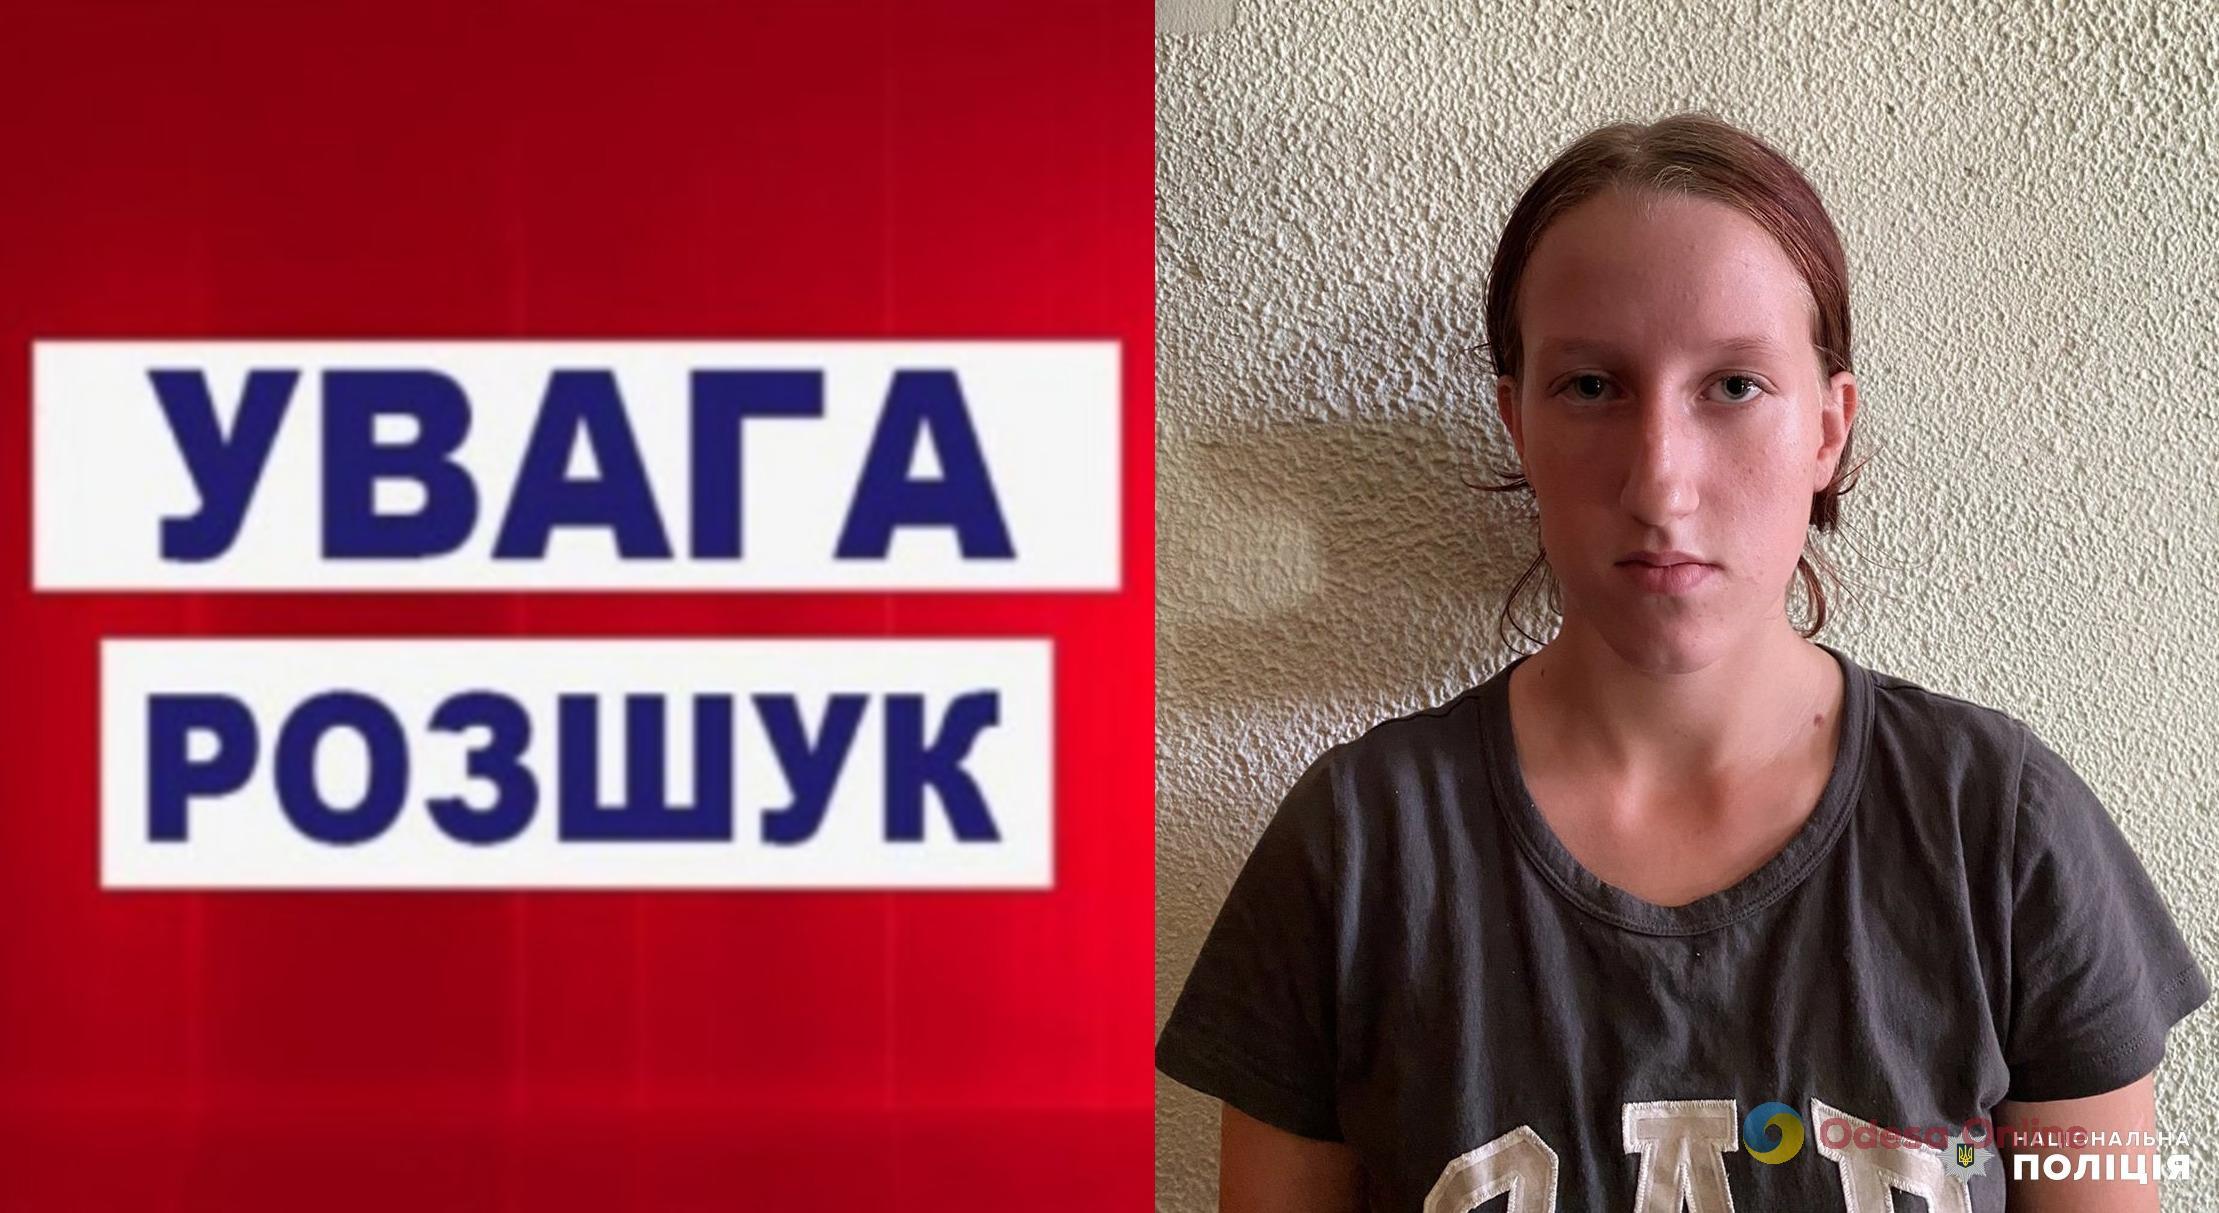 Одеський район: поліція шукає зниклу 16-річну дівчину (оновлено)